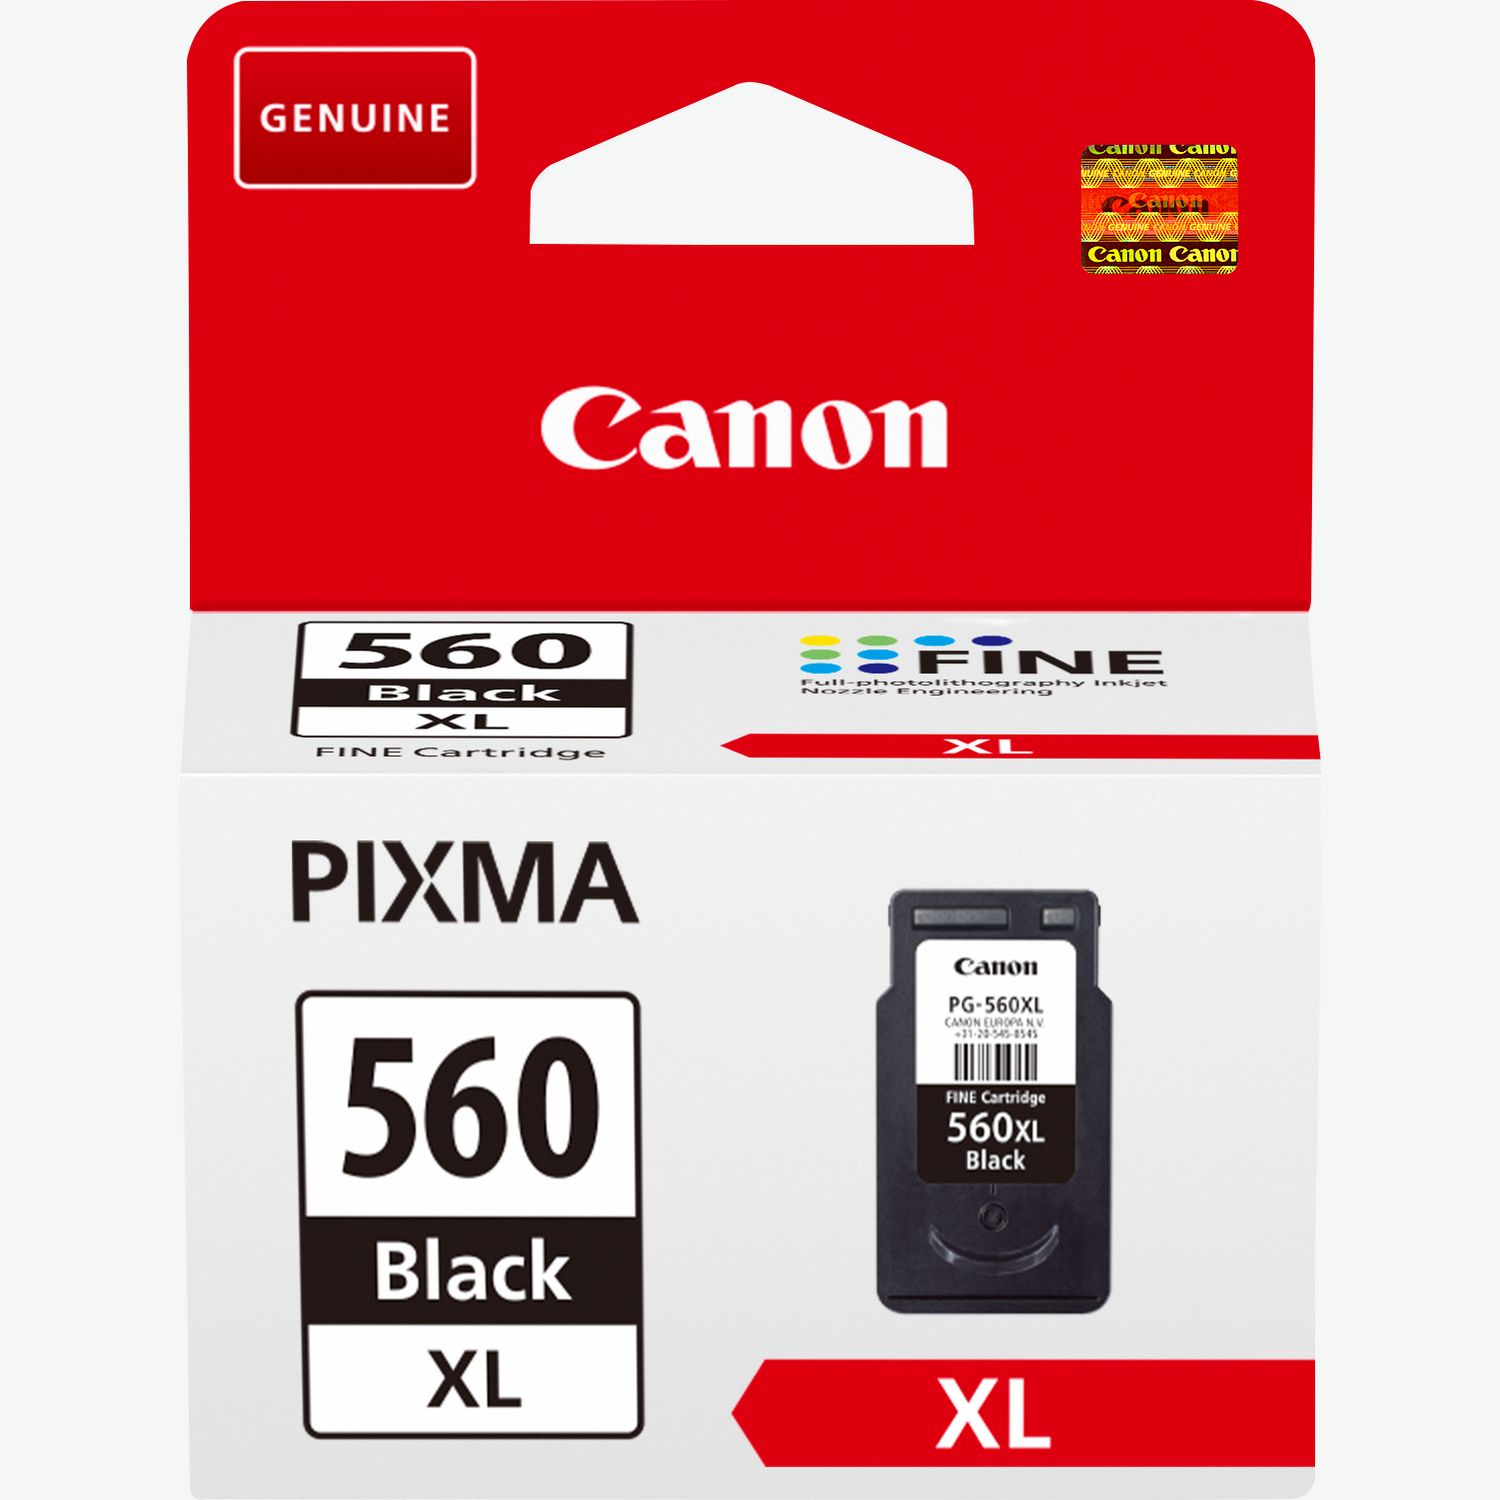 Canon PIXMA TS5350 Series - Canon Europe